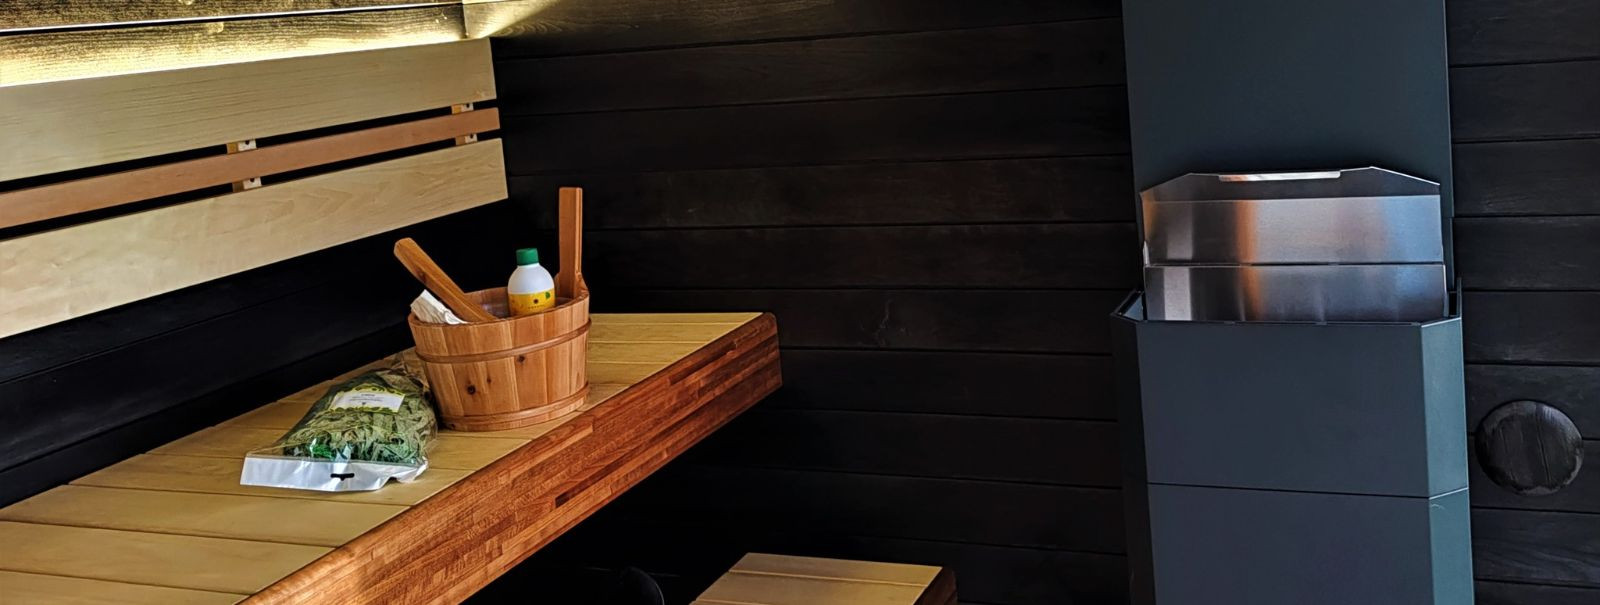 Õige meeleolu loomine saunas on rohkem kui lihtsalt temperatuur ...